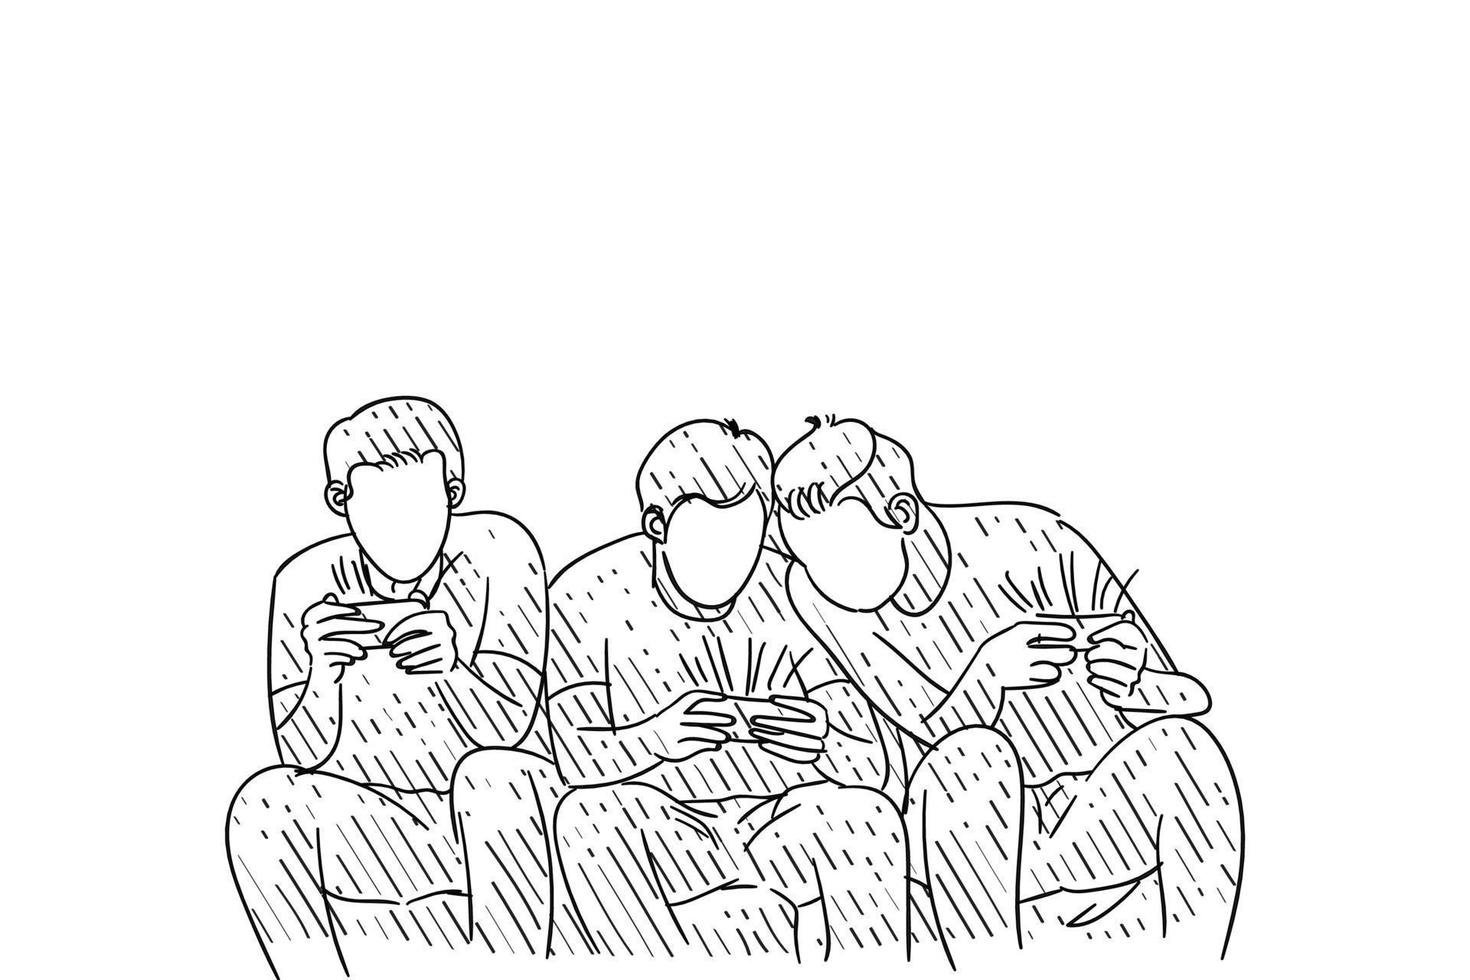 disegnato a mano di un gruppo di amici che giocano in soggiorno e guardano lo smartphone. disegno di illustrazione vettoriale